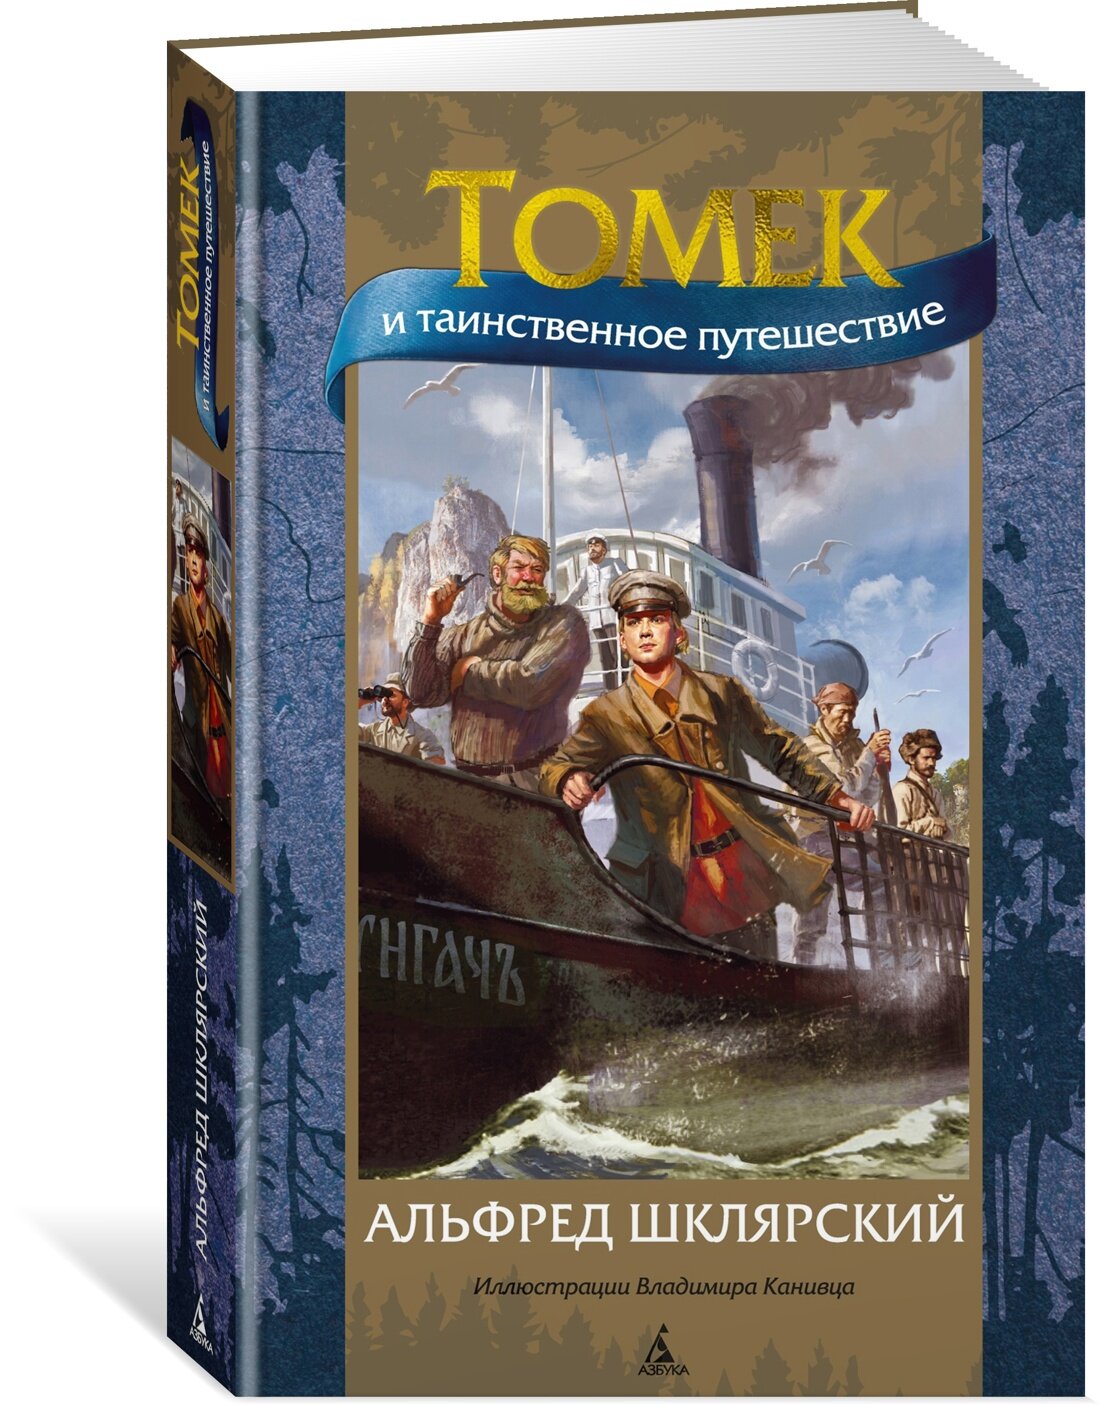 Книга Томек и таинственное путешествие